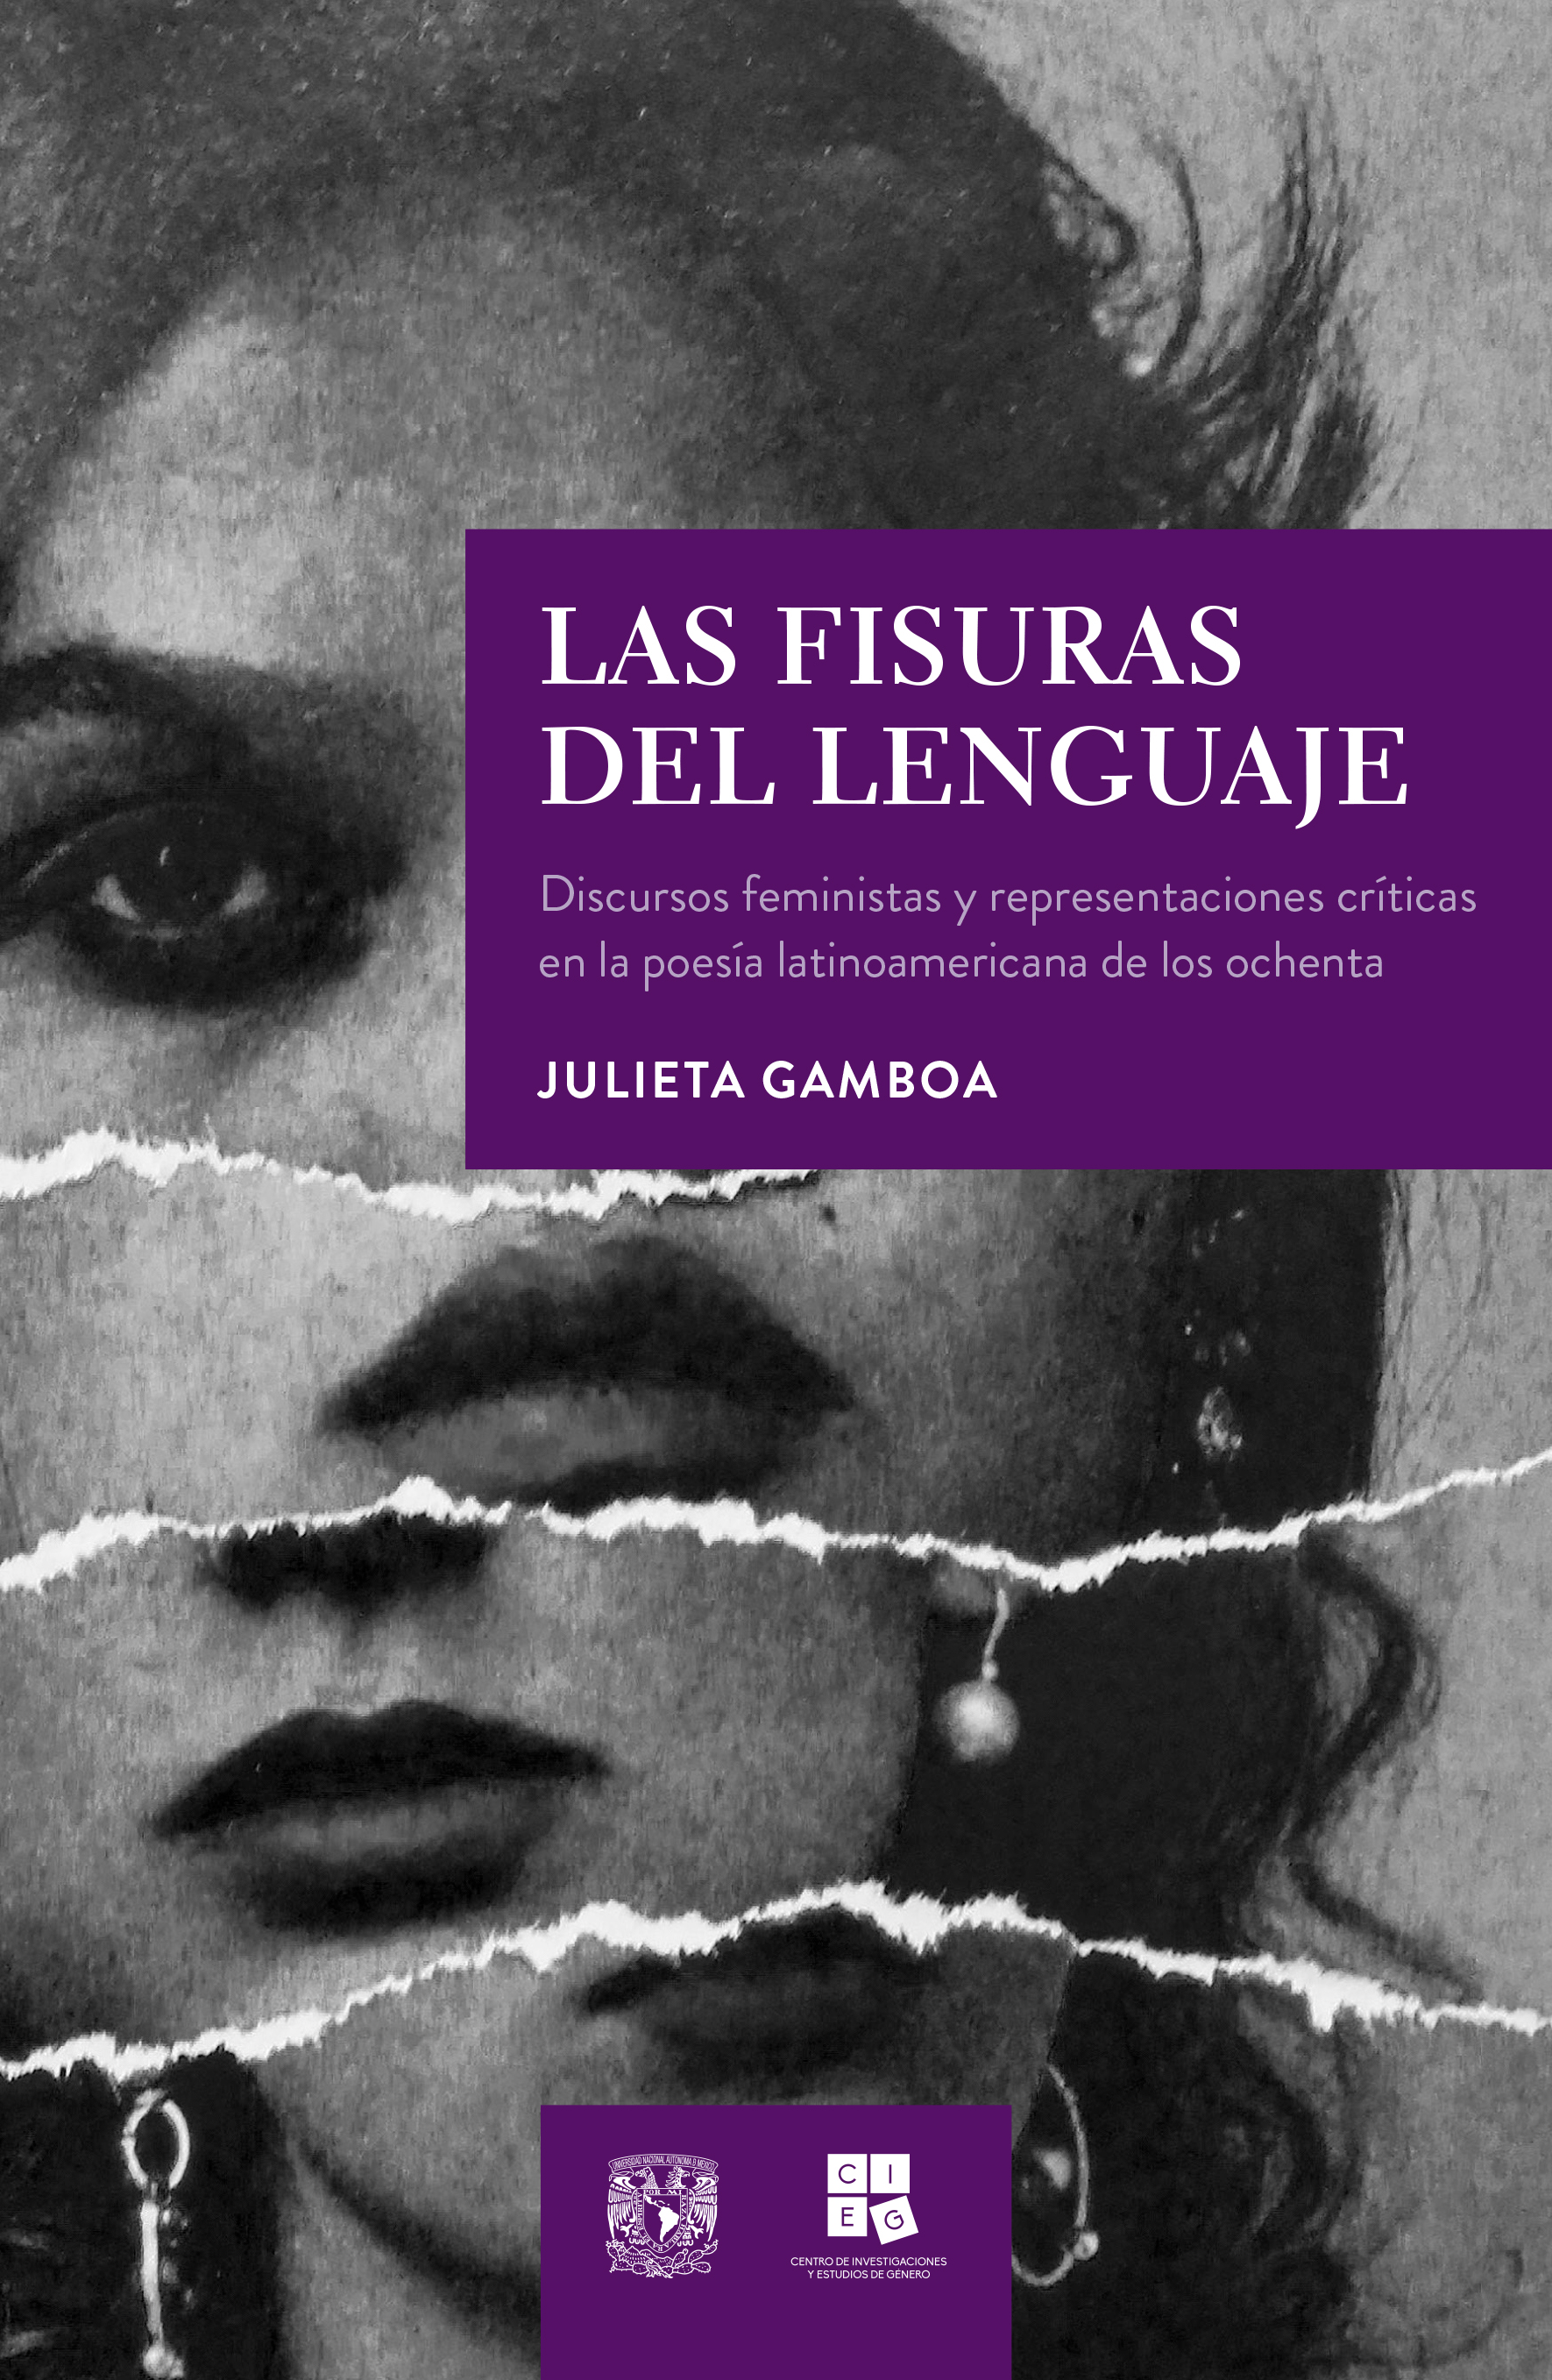 Las fisuras del lenguaje. Discursos feministas y representaciones críticas en la poesía latinoamericana de los ochenta